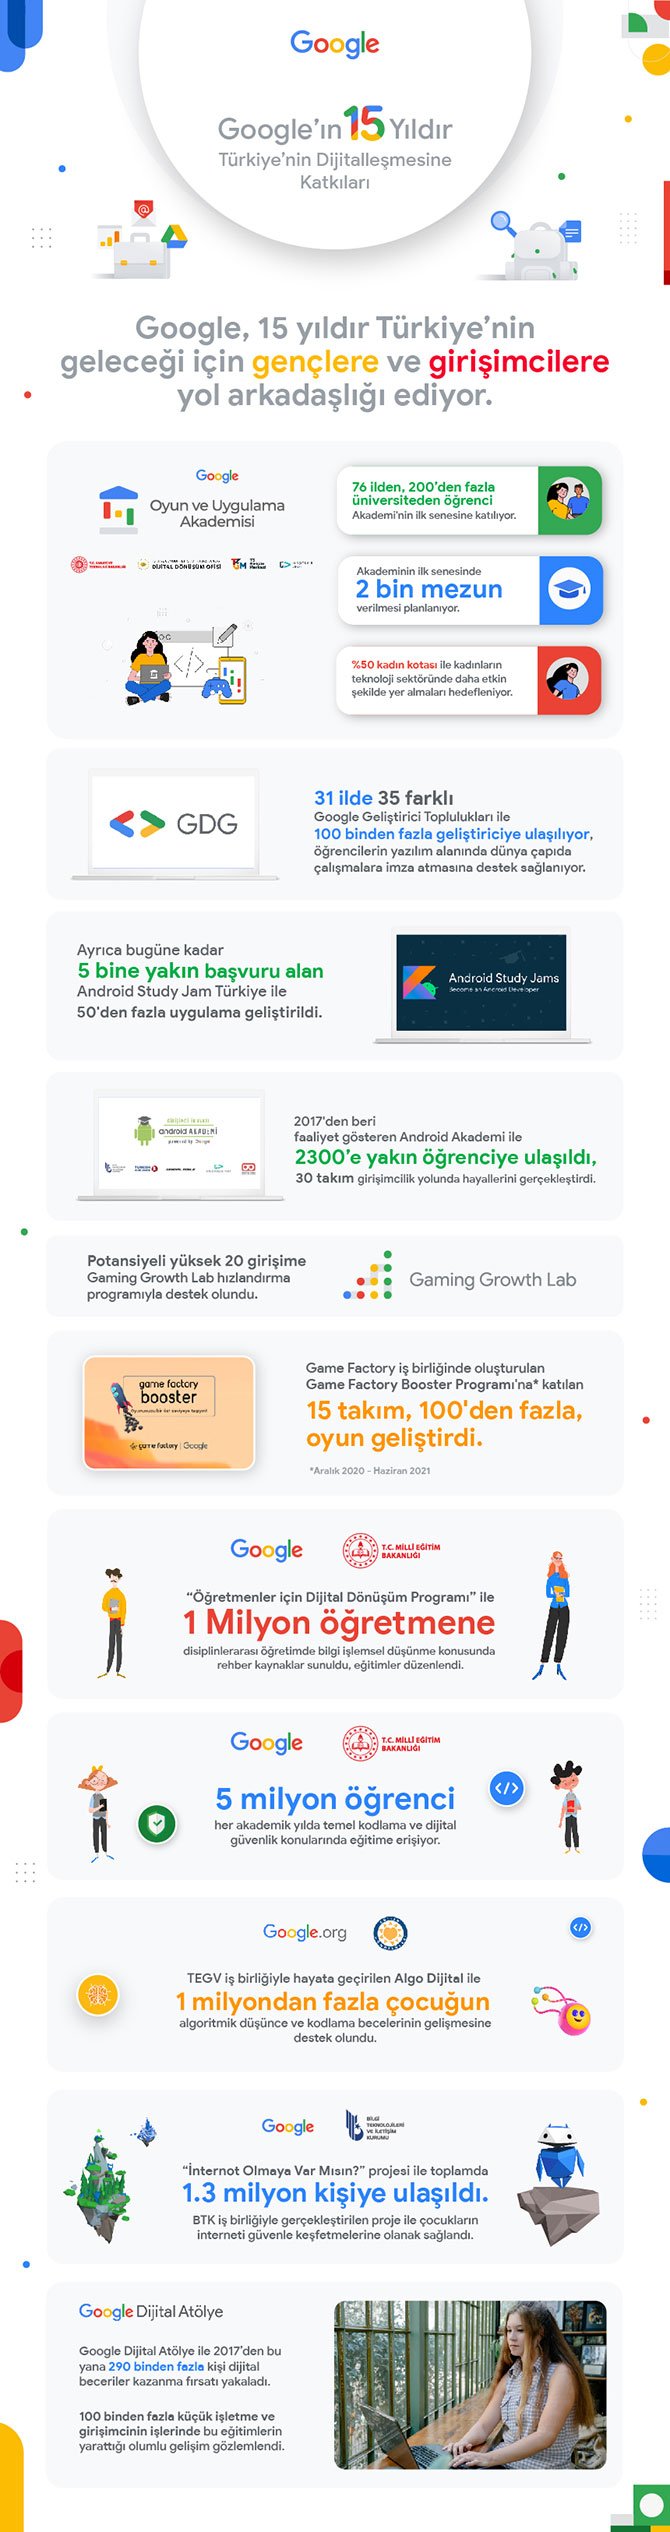 google-turkiye’-007.jpg